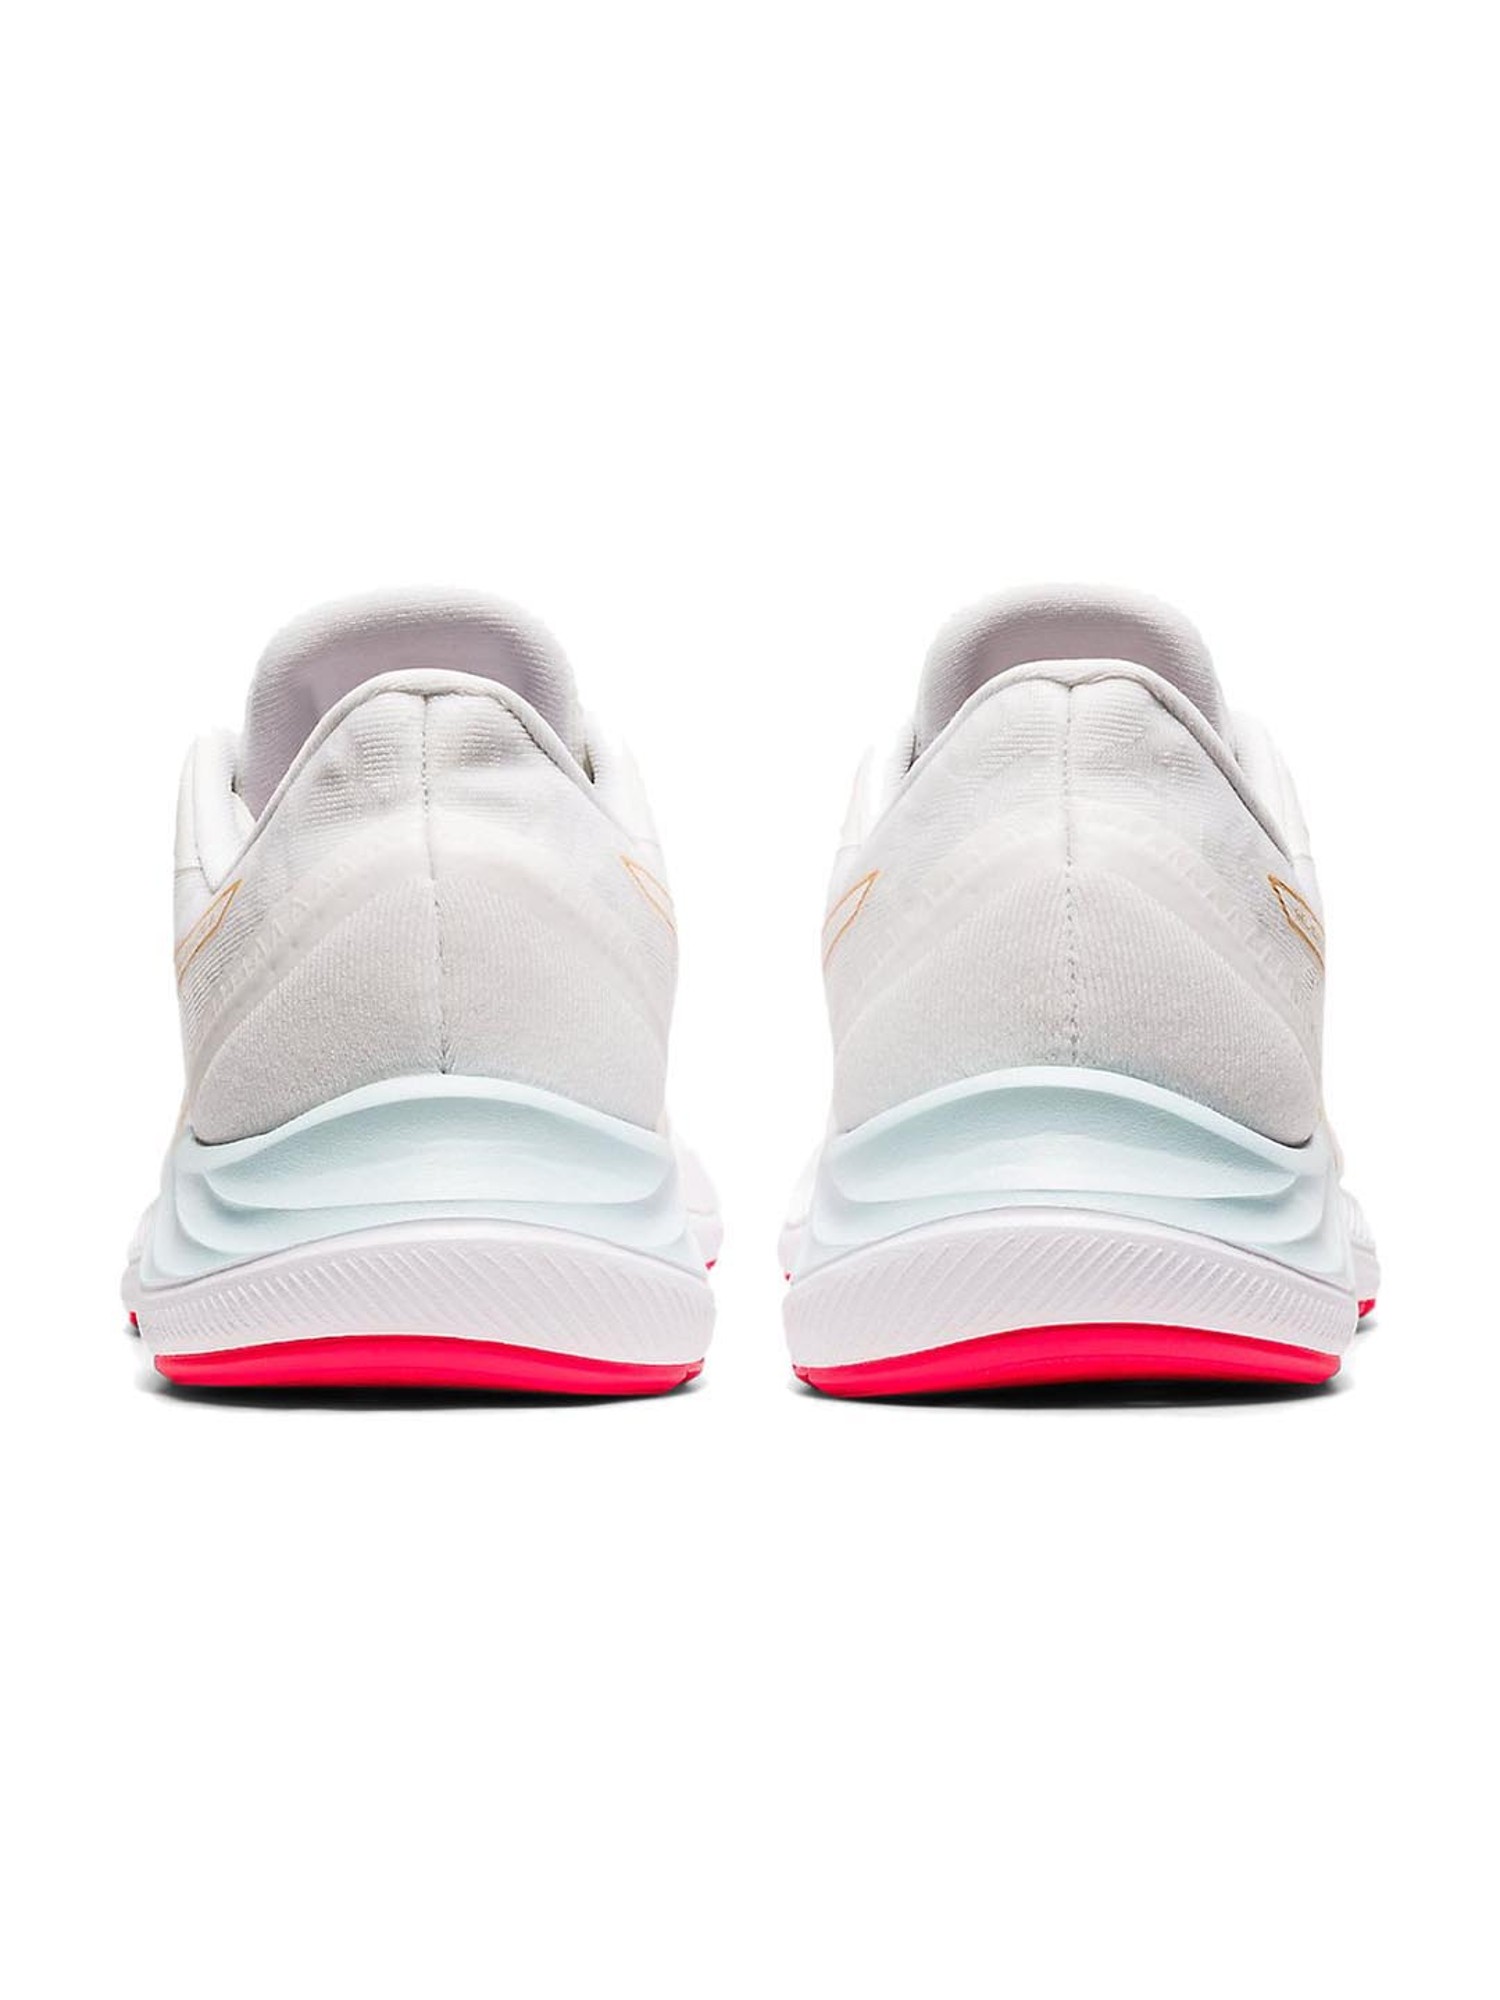 AsicsASICS Women's Gel-Excite 8 Twist Running Shoes Marque  8.5 Mist/White 